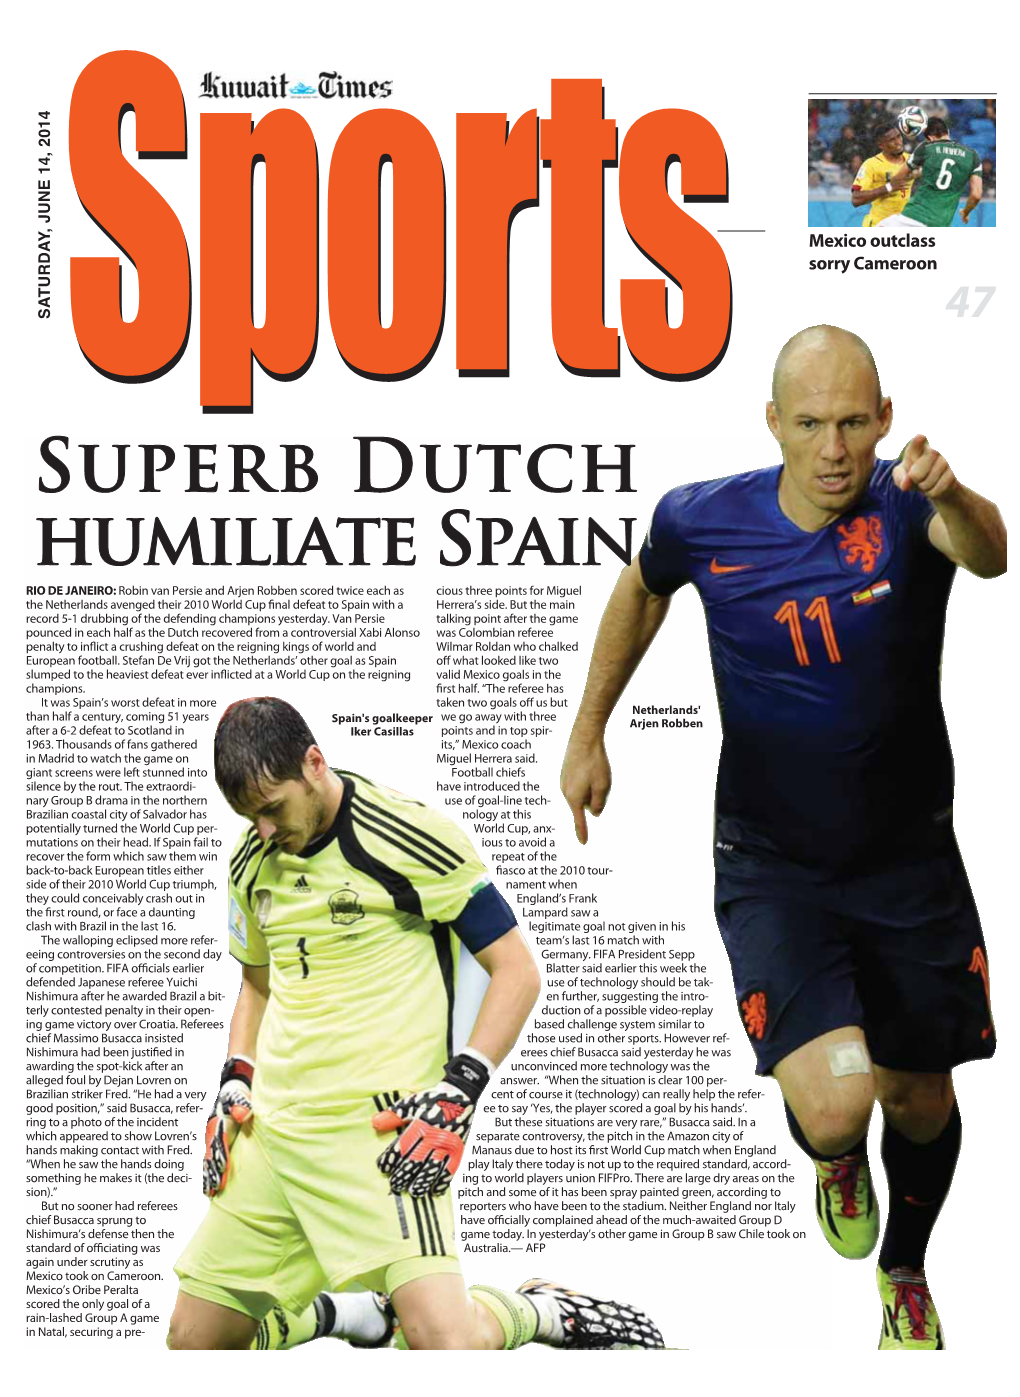 Superb Dutch Humiliate Spain